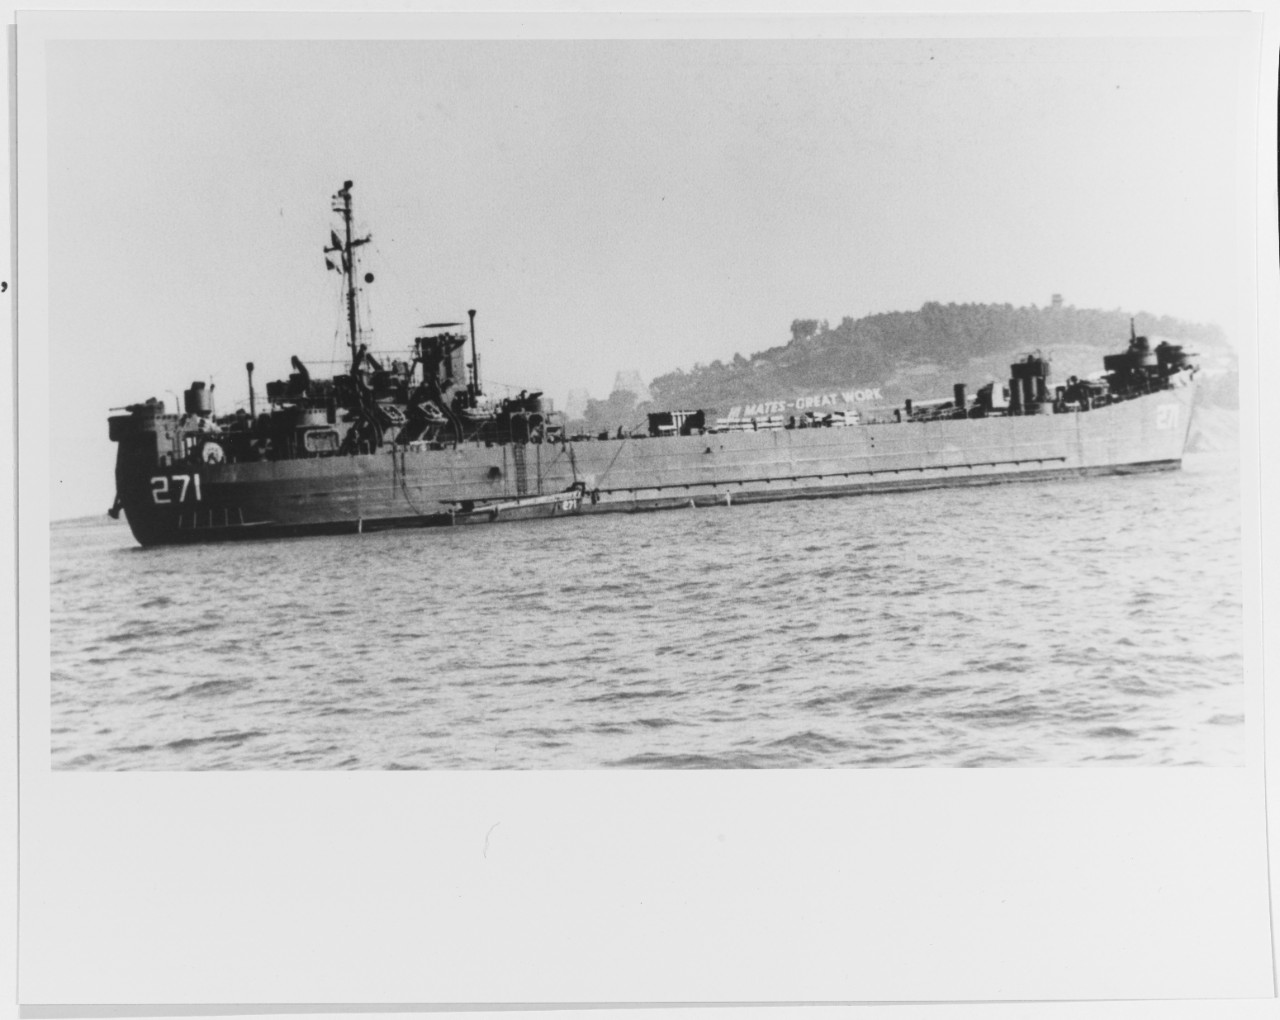 USS LST-271